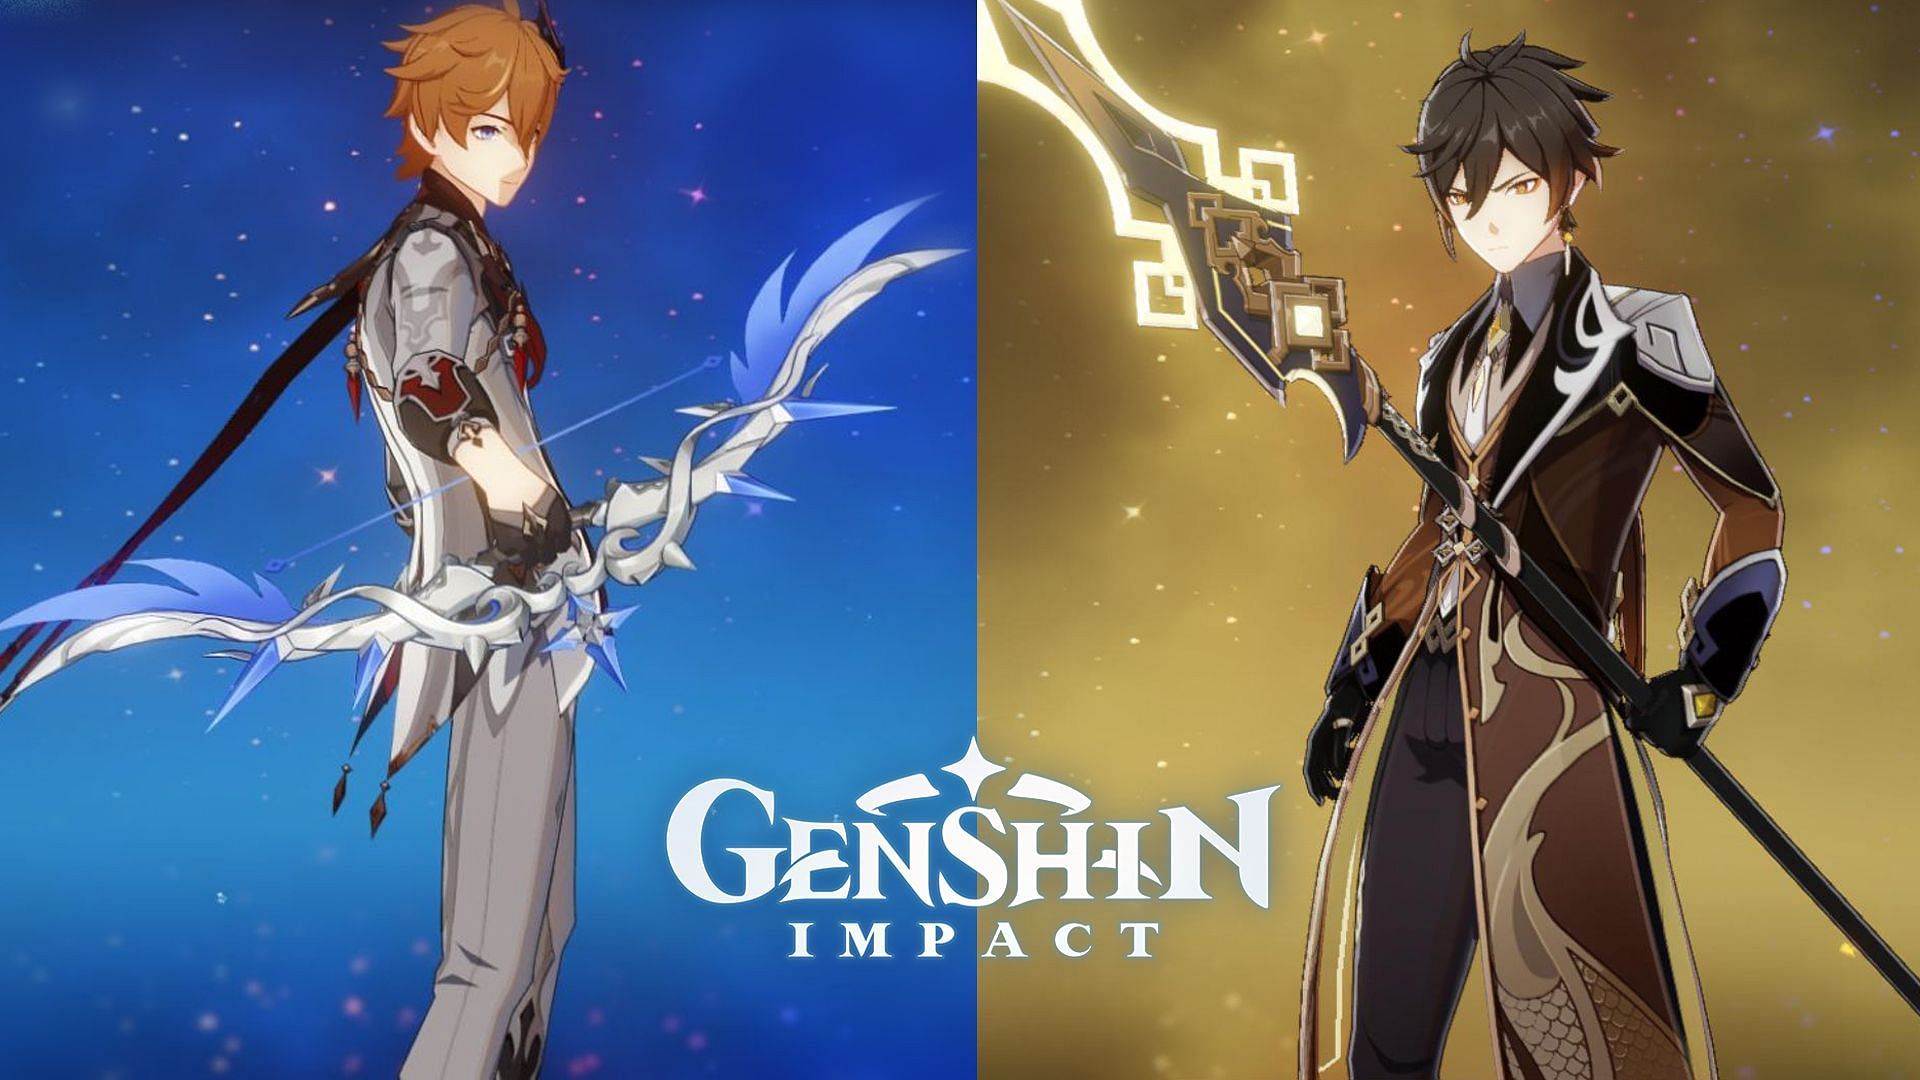 Calendário dos banners de Genshin Impact 4.0: Childe, Lyney, Lynette e mais